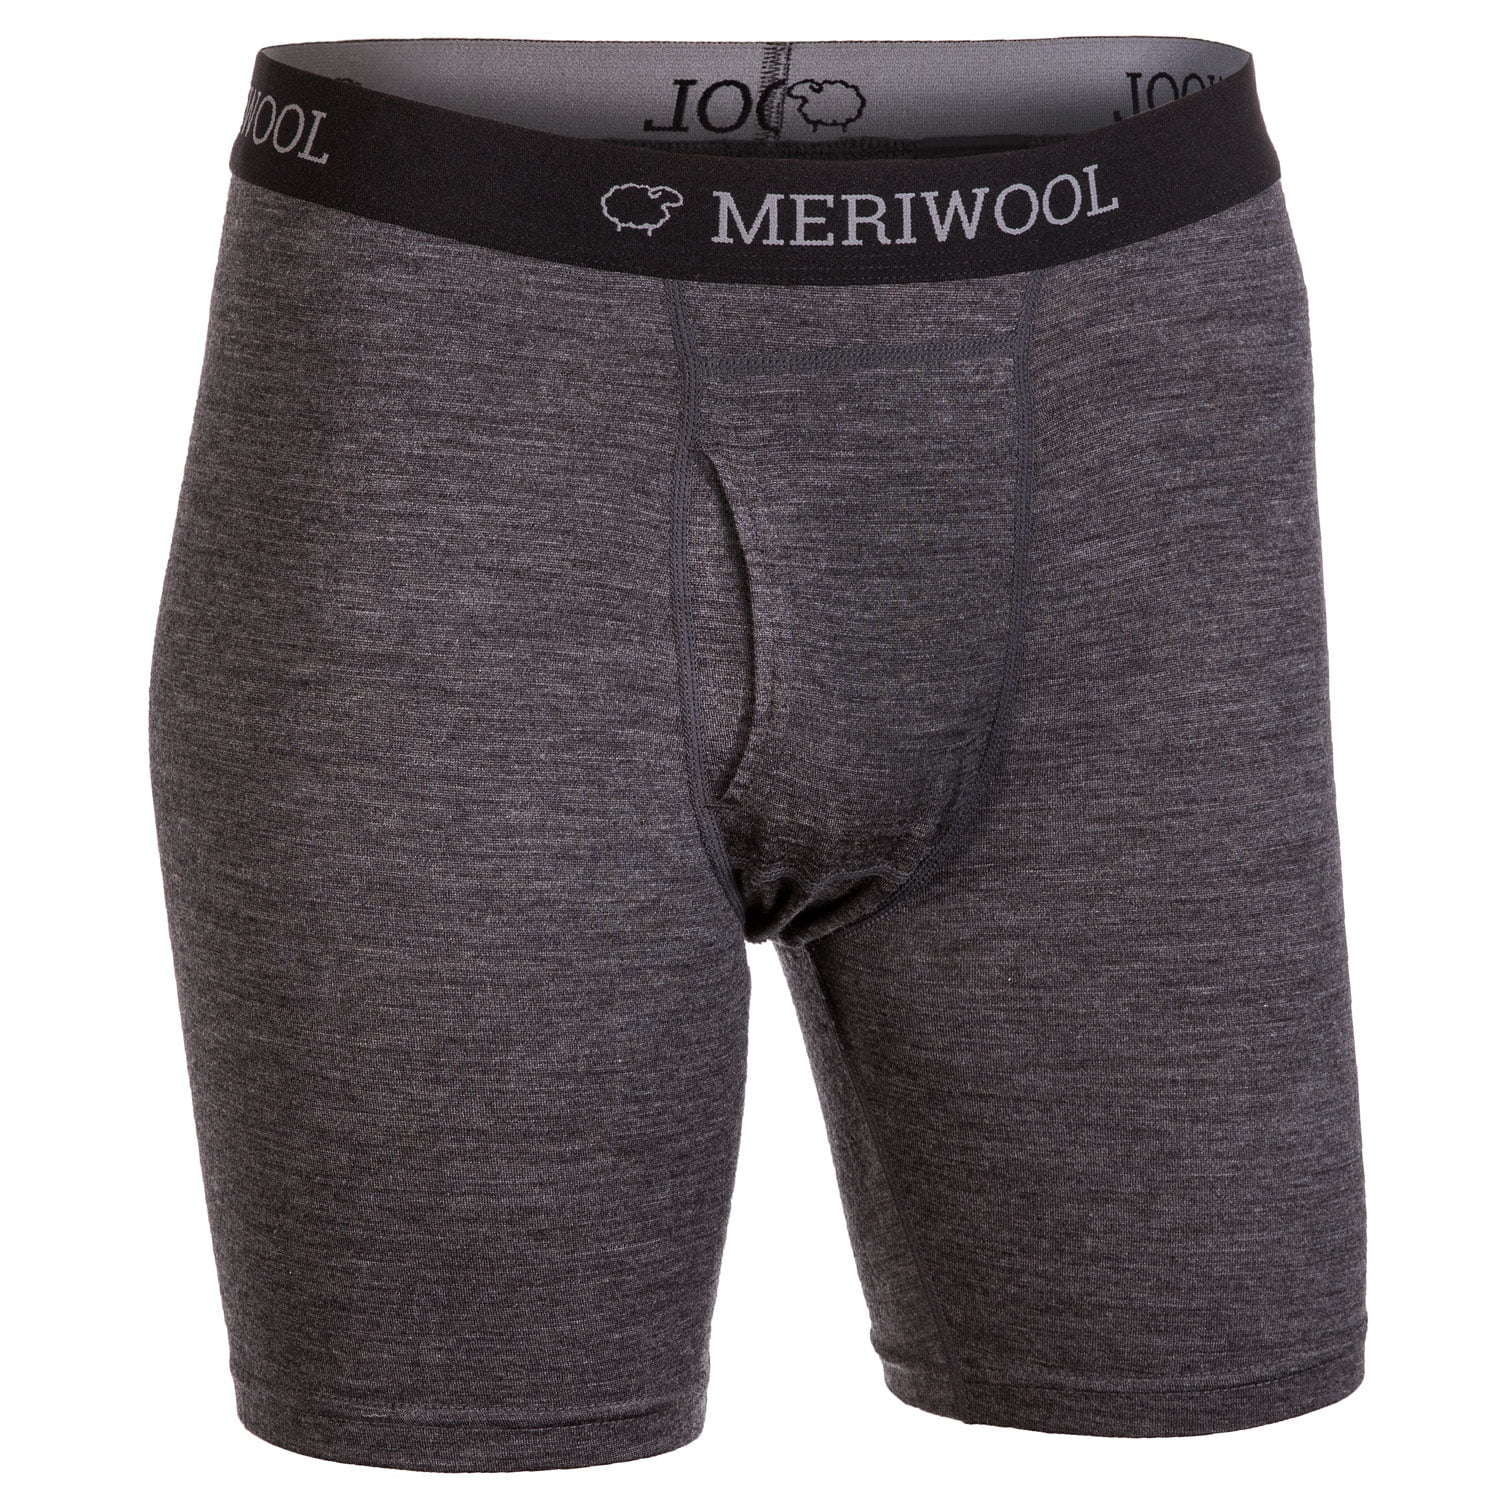 Buy Mens Underwear Boxer Shorts Wool Underwear Briefs Natural